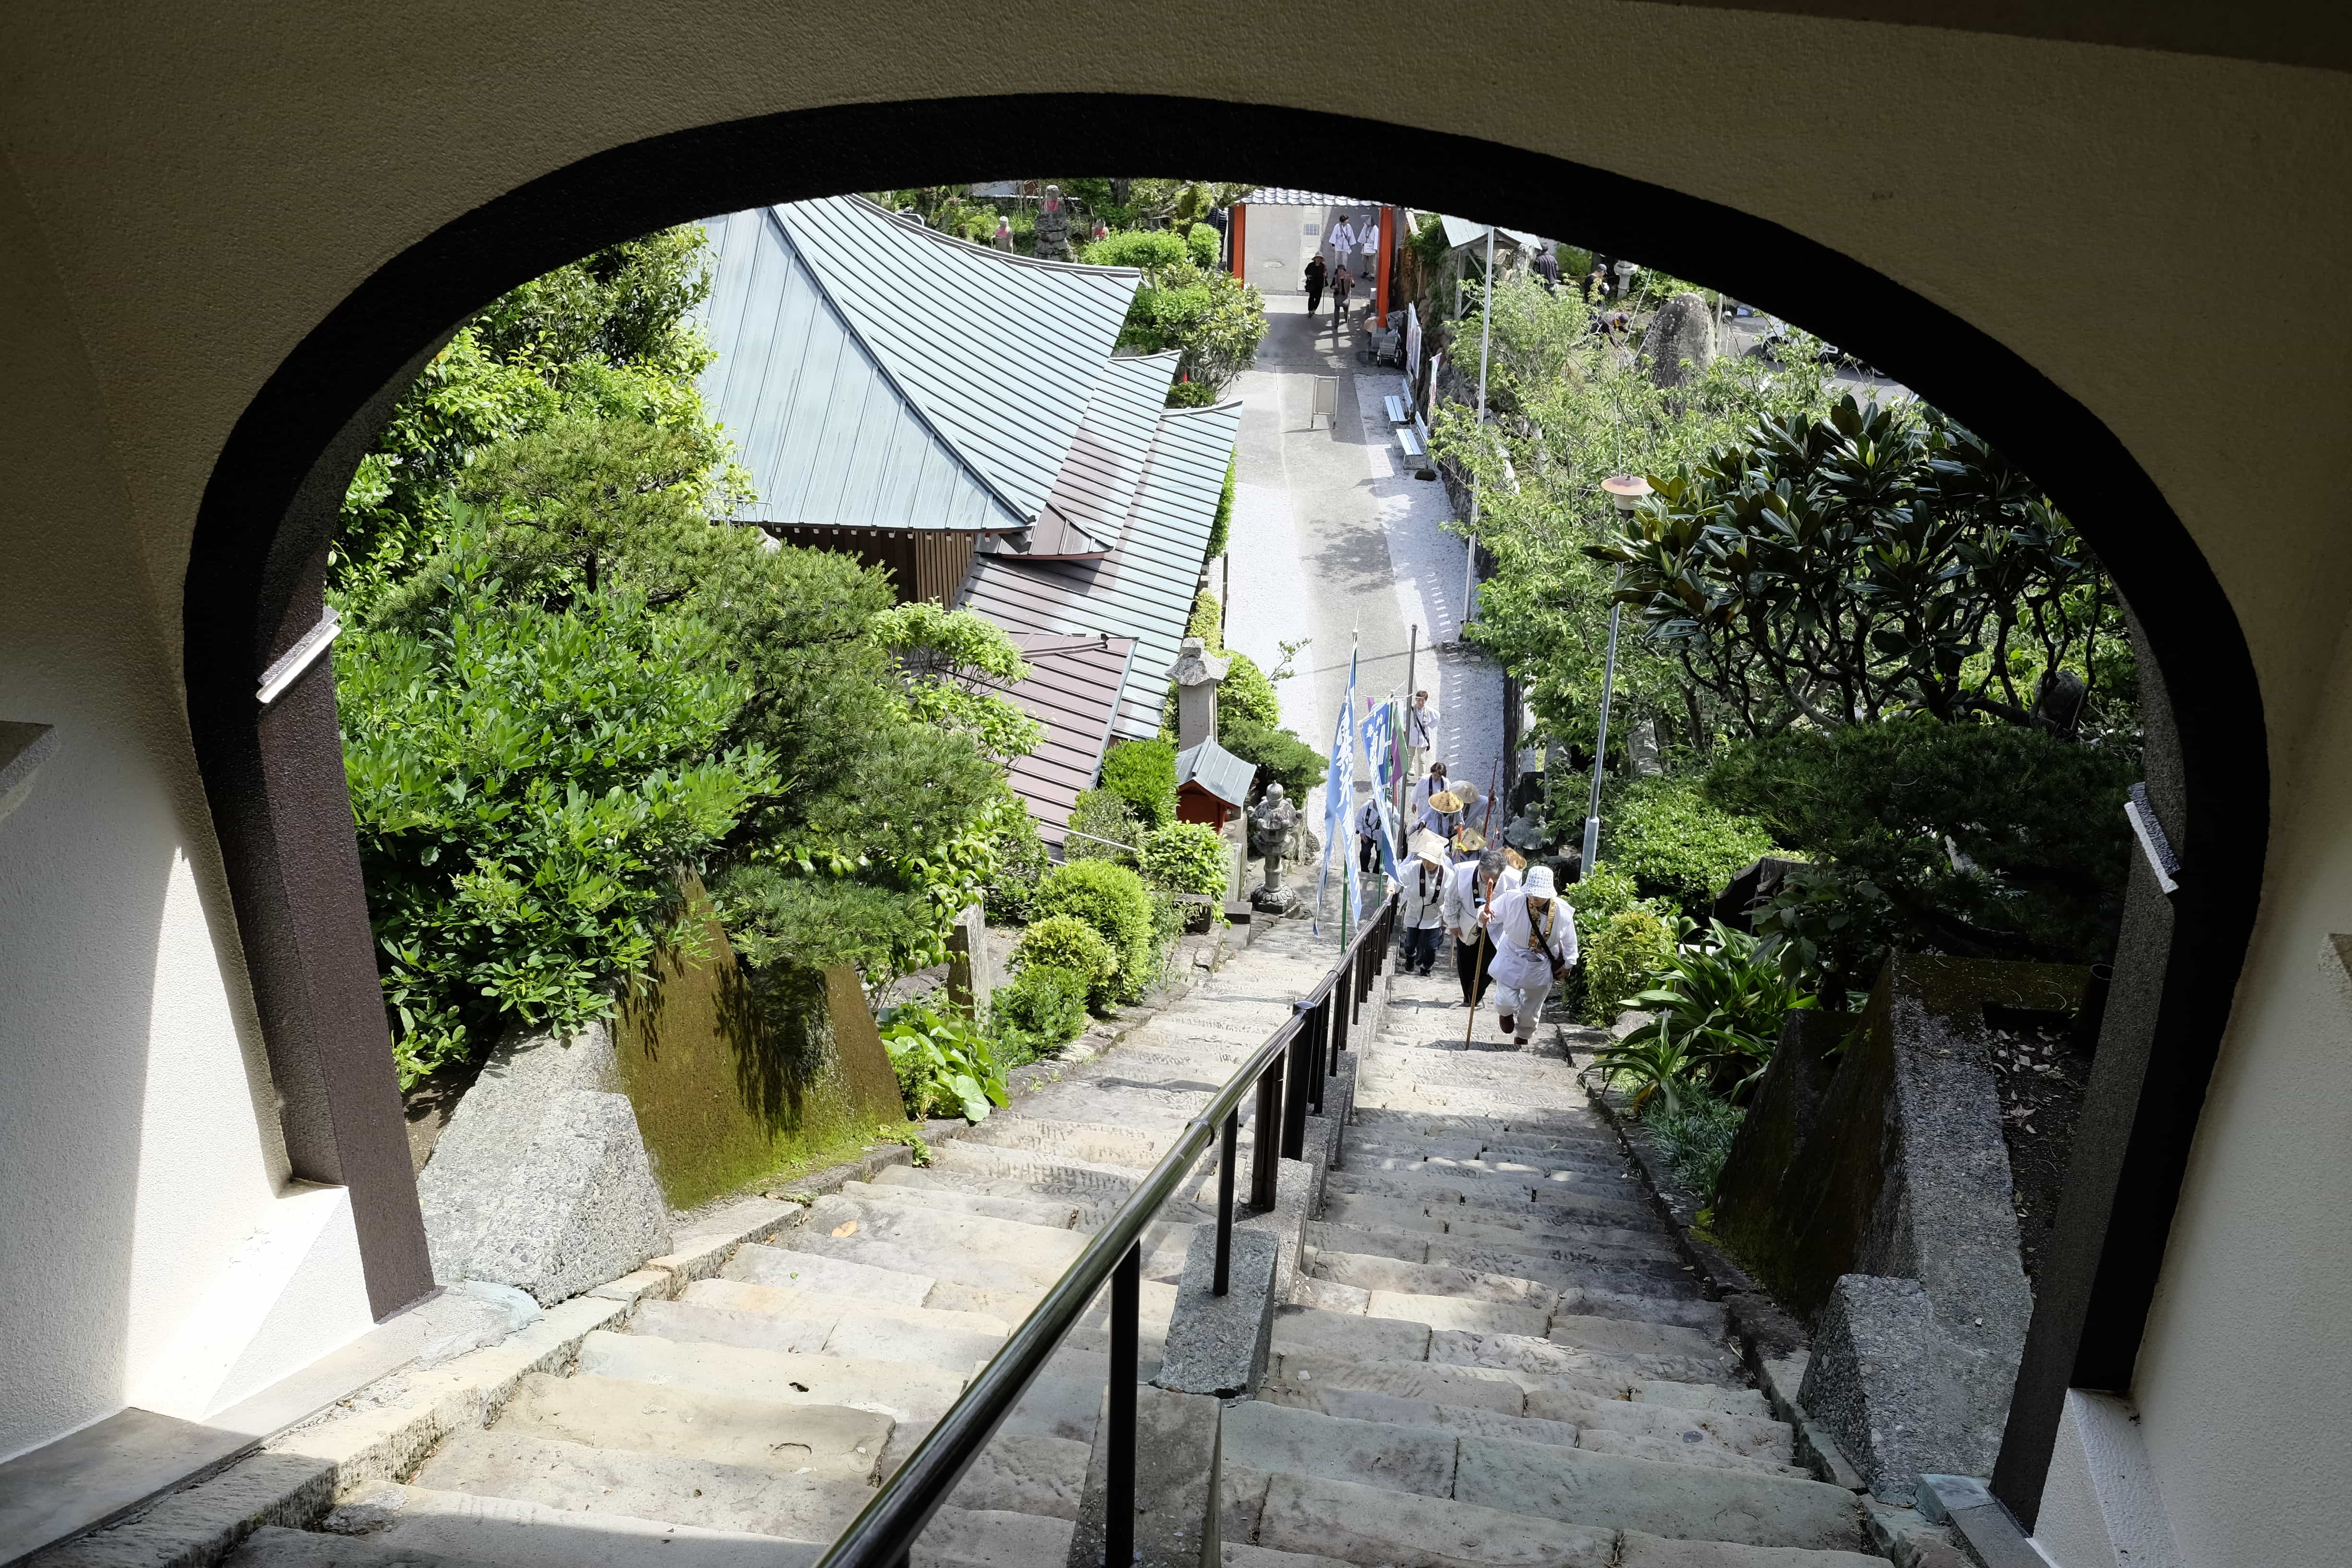 Pilgrims ascending to Shinshō-ji